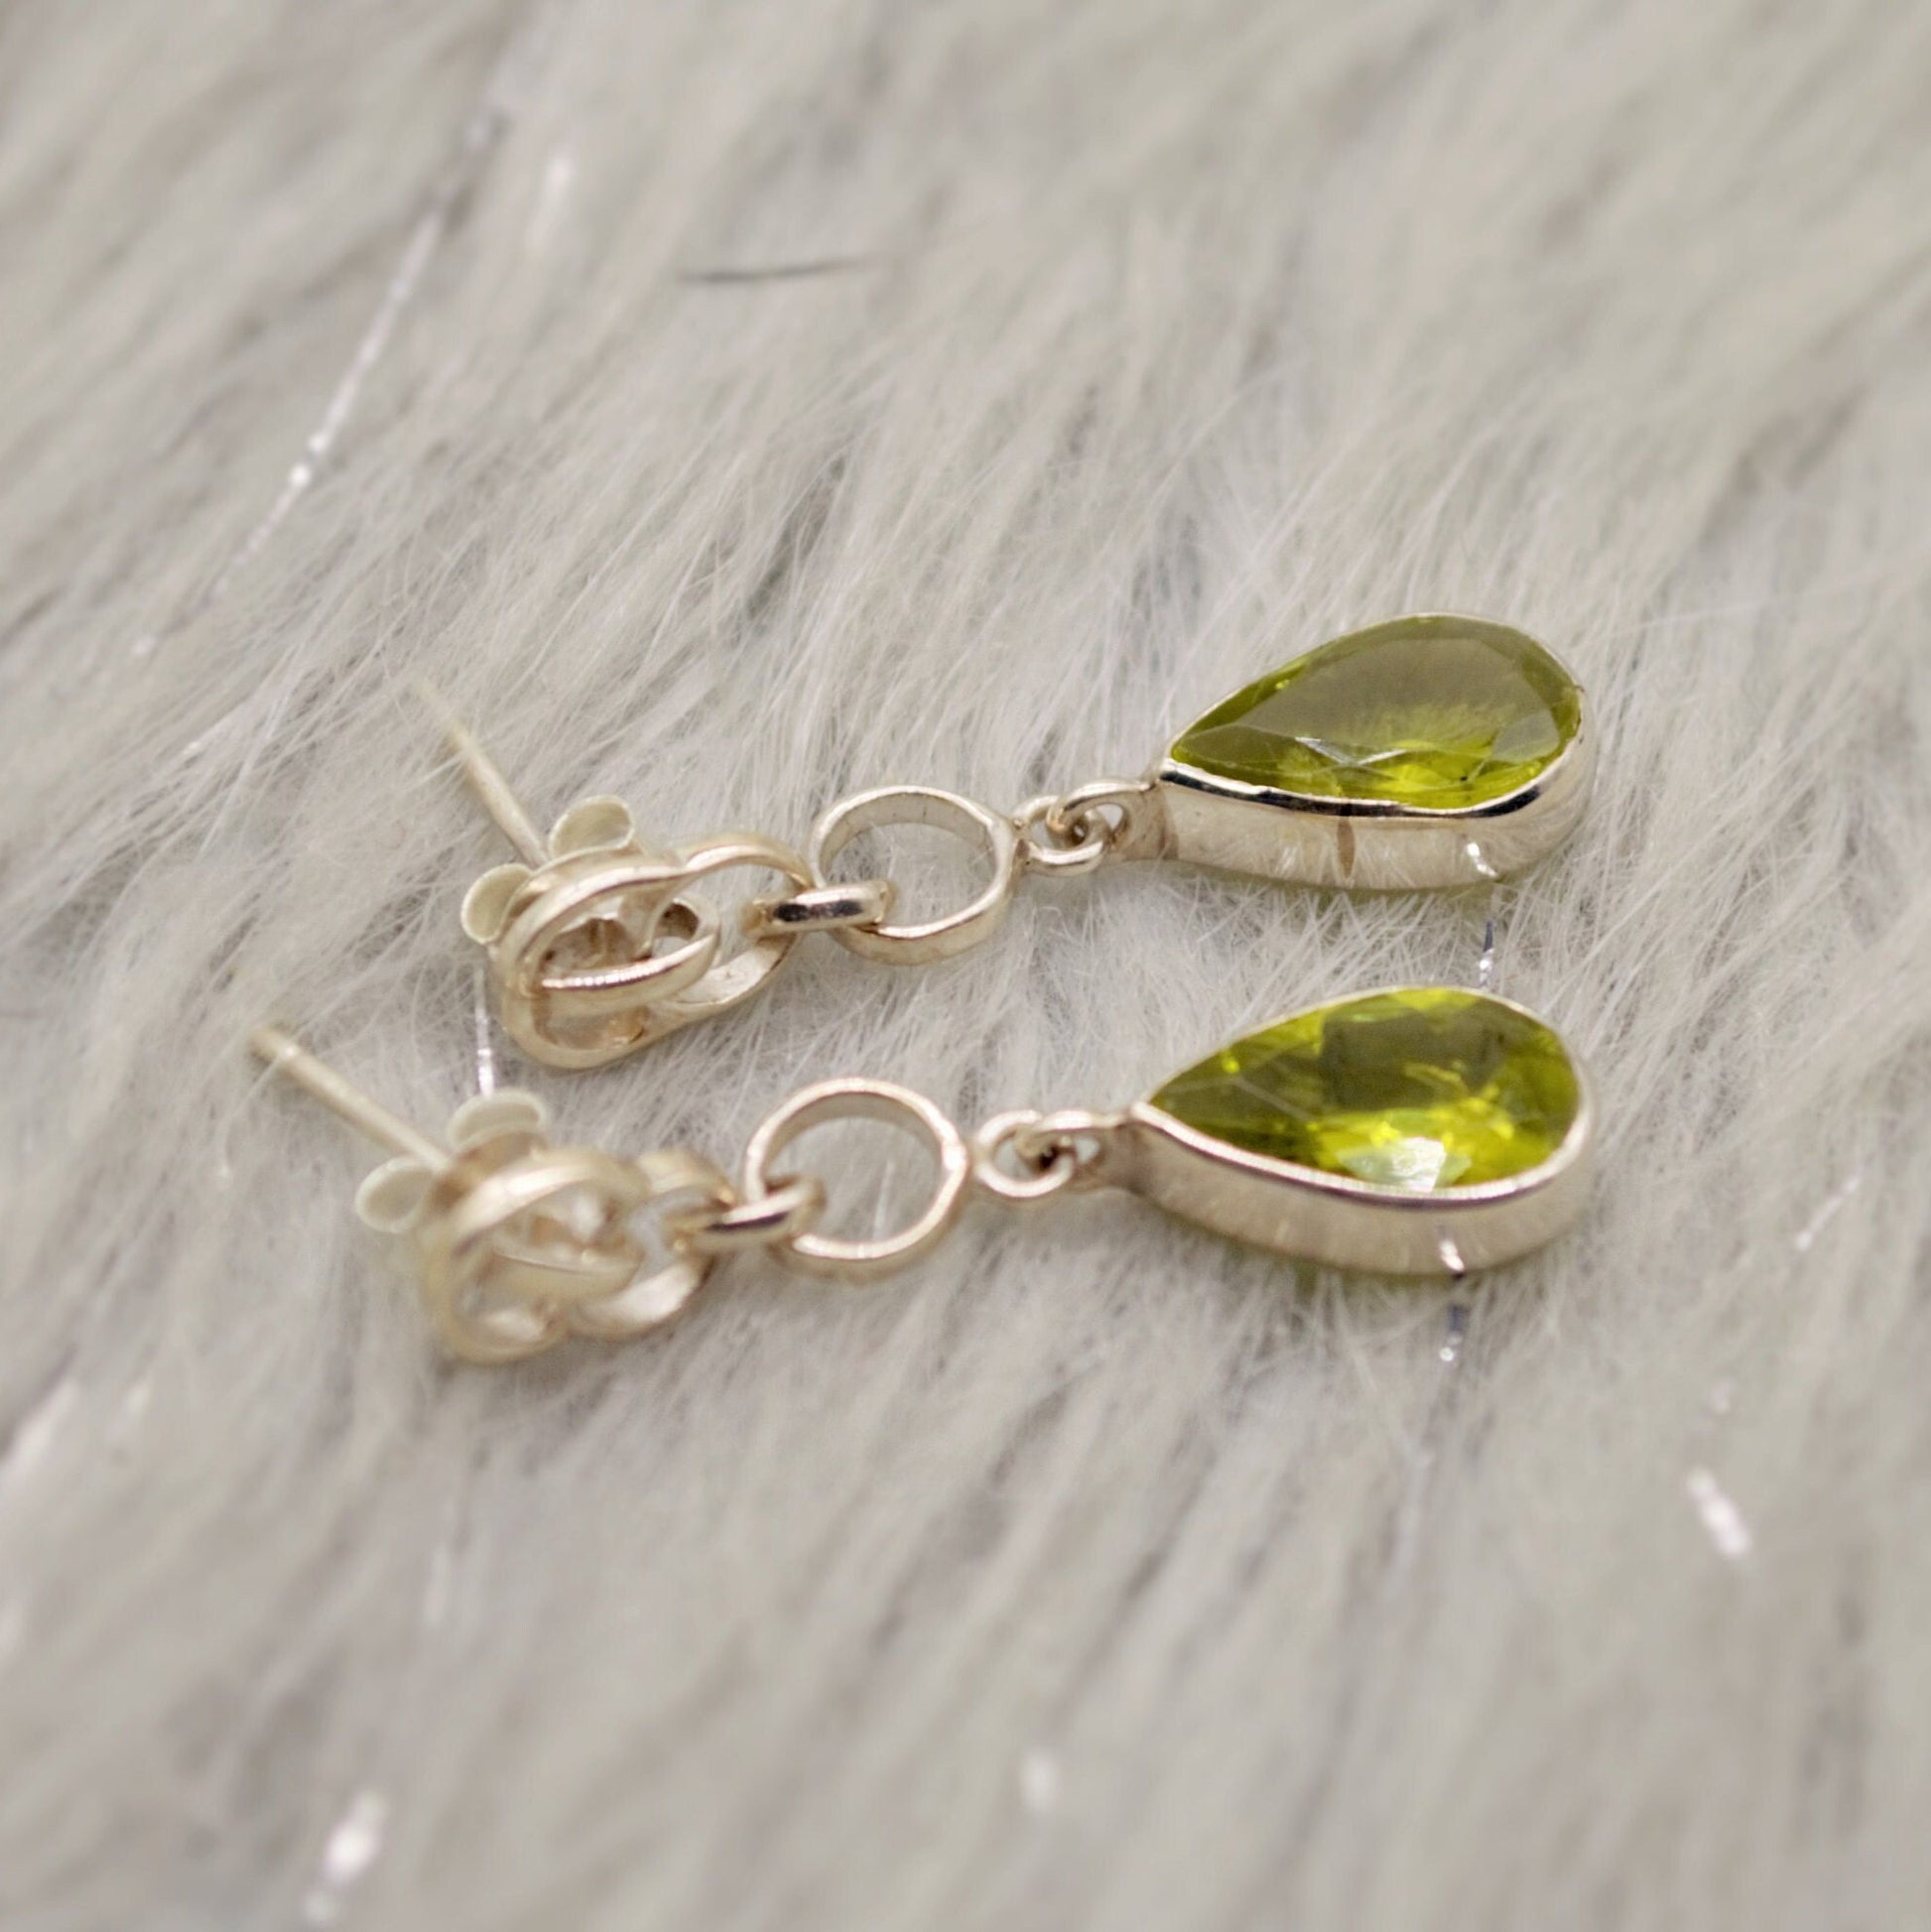 Peridot Earrings, Sterling Silver, August Birthstone, Unique Statement Dangle Drop Earrings, Green Gemstone Earrings, Gifts For Her